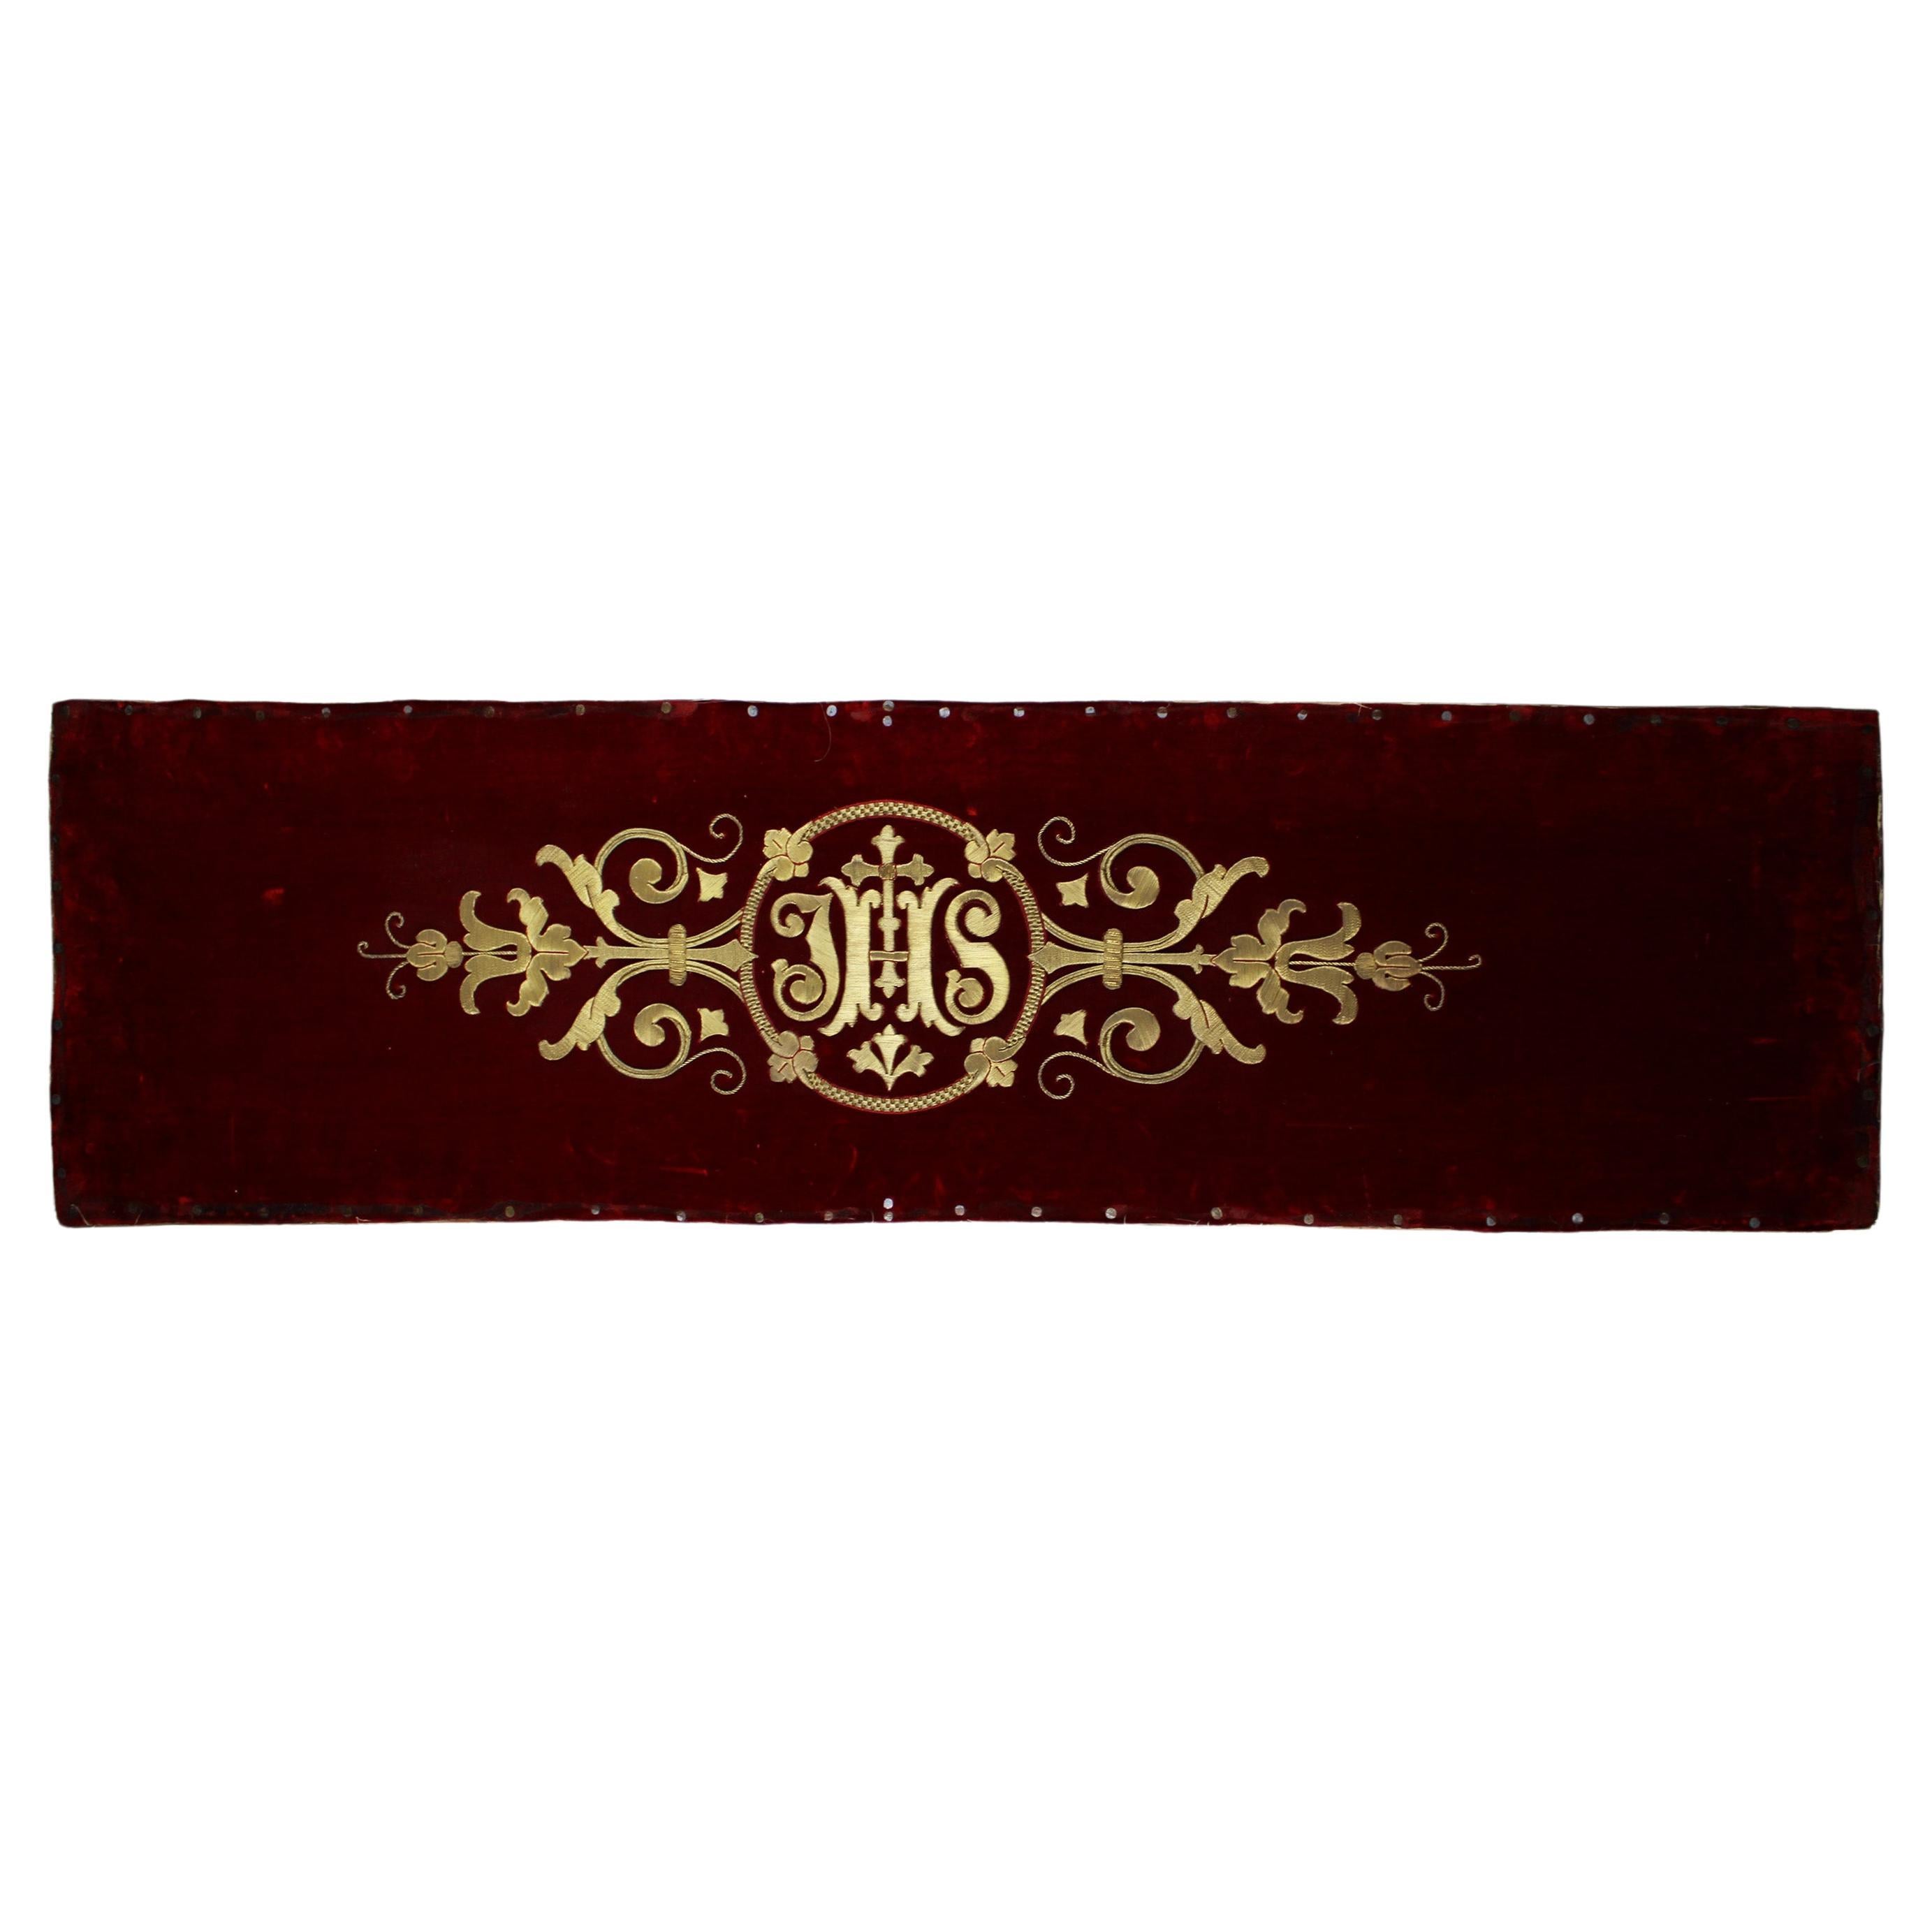 19ème siècle, broderie liturgique en relief et or sur velours de soie rouge Belgique